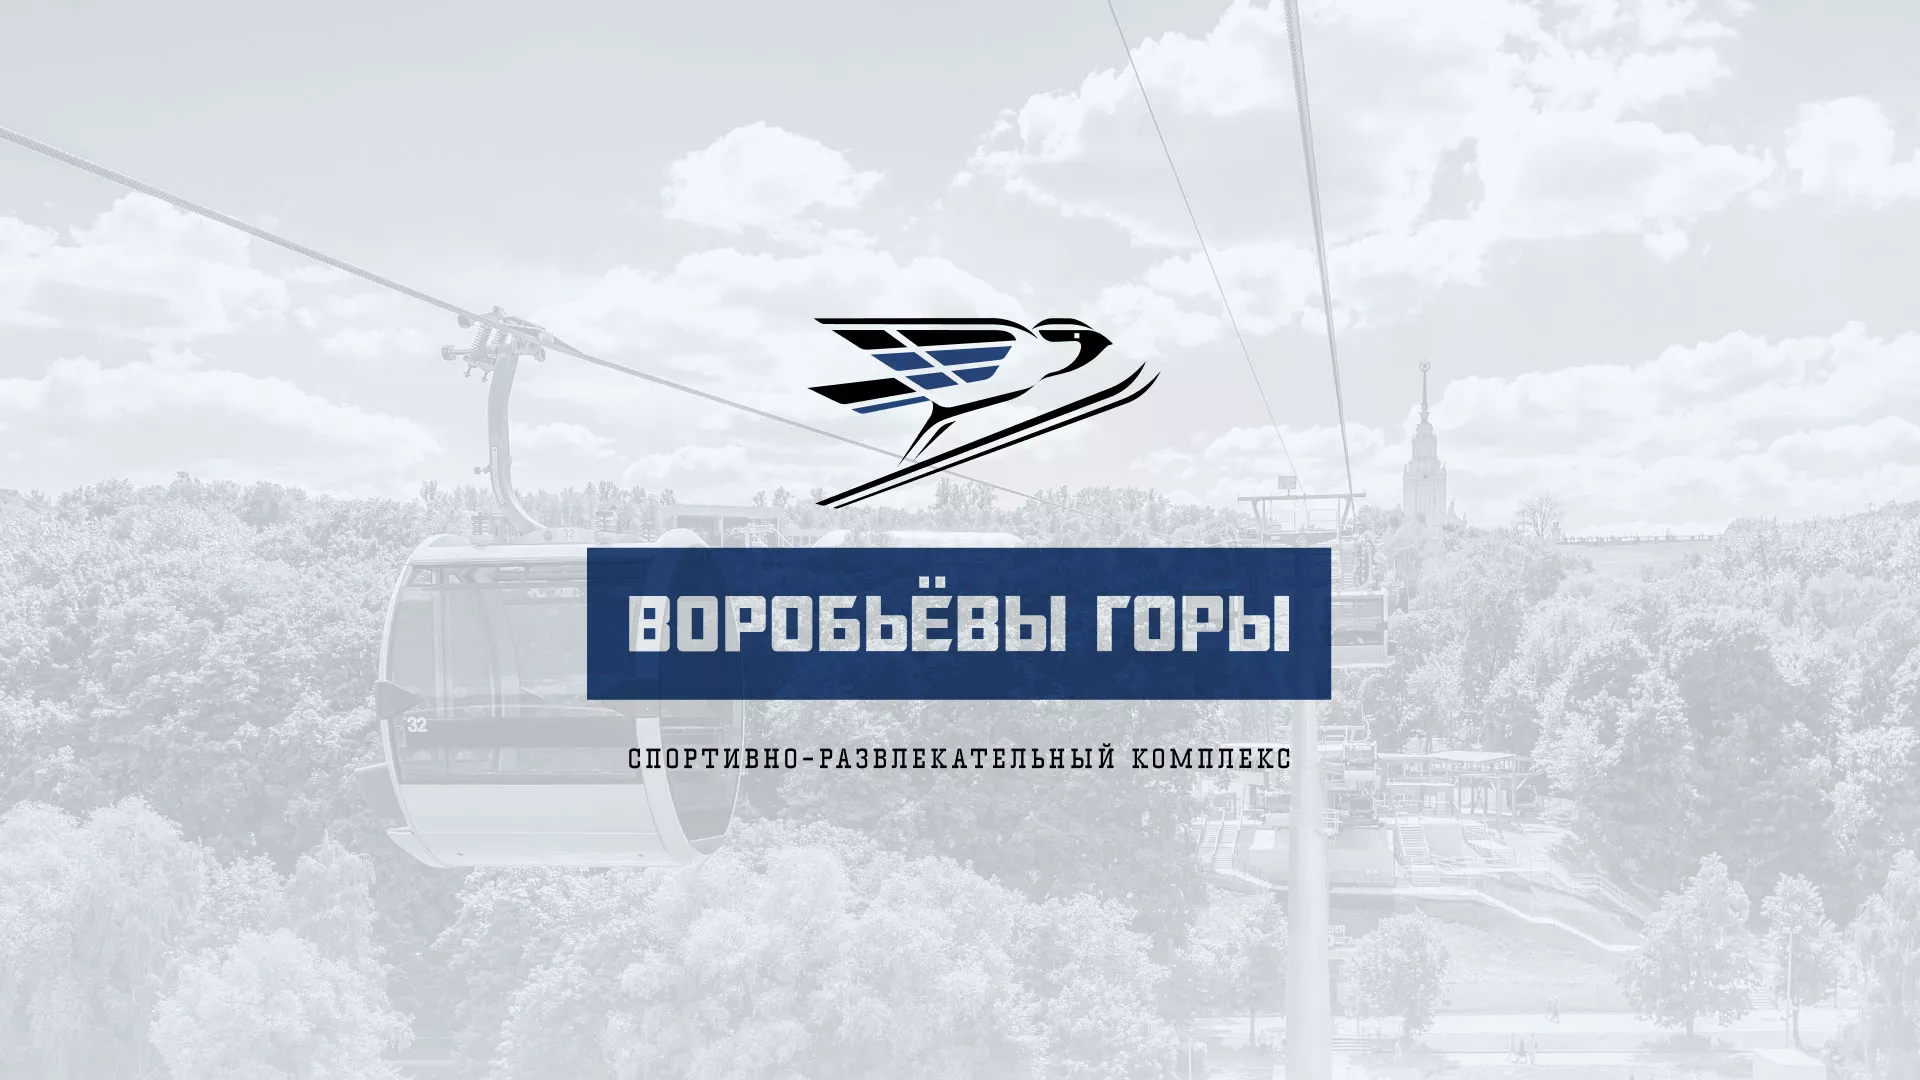 Разработка сайта в Козельске для спортивно-развлекательного комплекса «Воробьёвы горы»